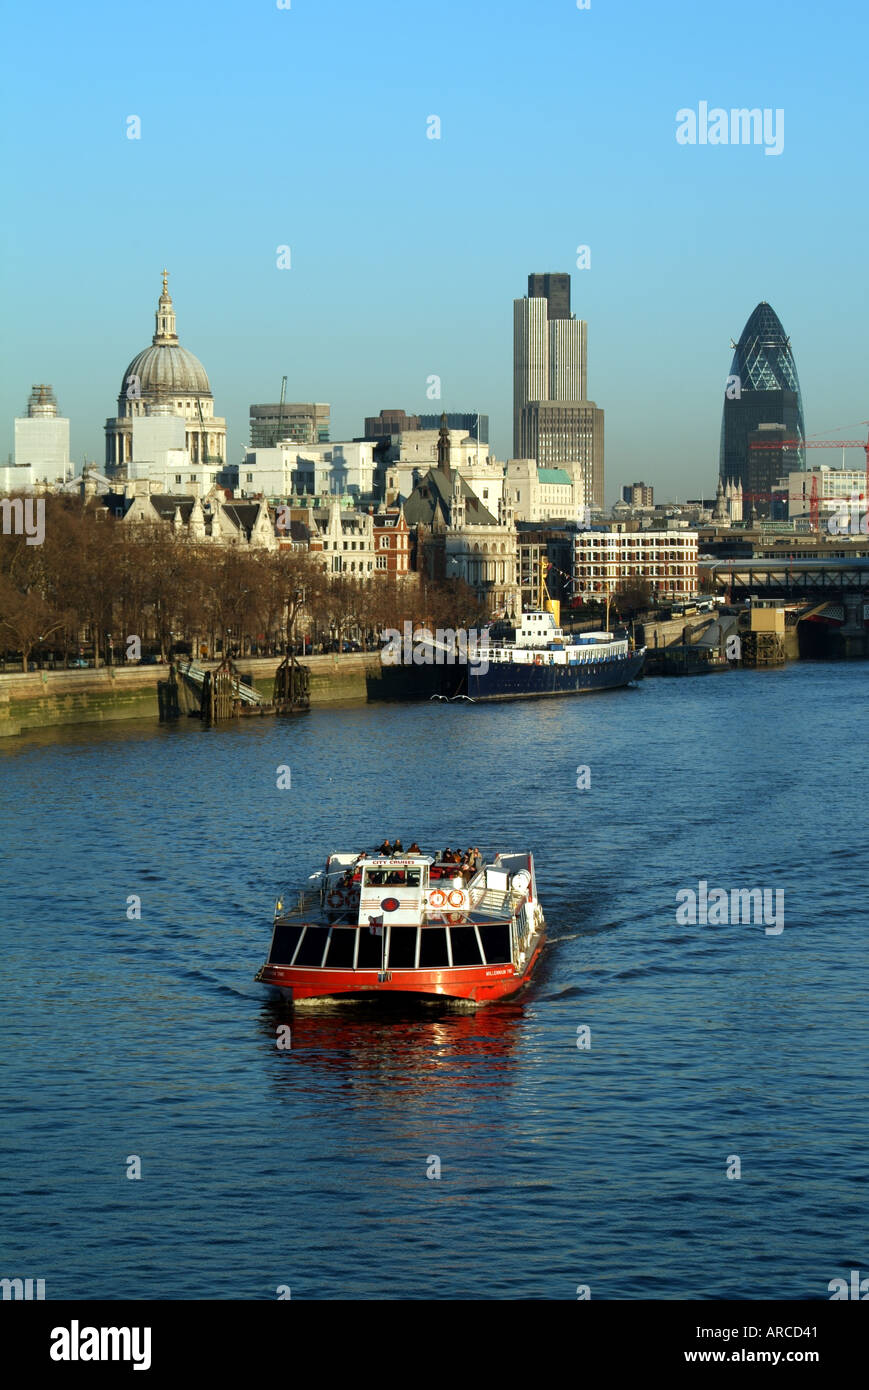 Ville de ville de Londres au-delà de l'Embankment Tamise vus de Waterloo Bridge avec style bateau Bateaux mouches tour Banque D'Images